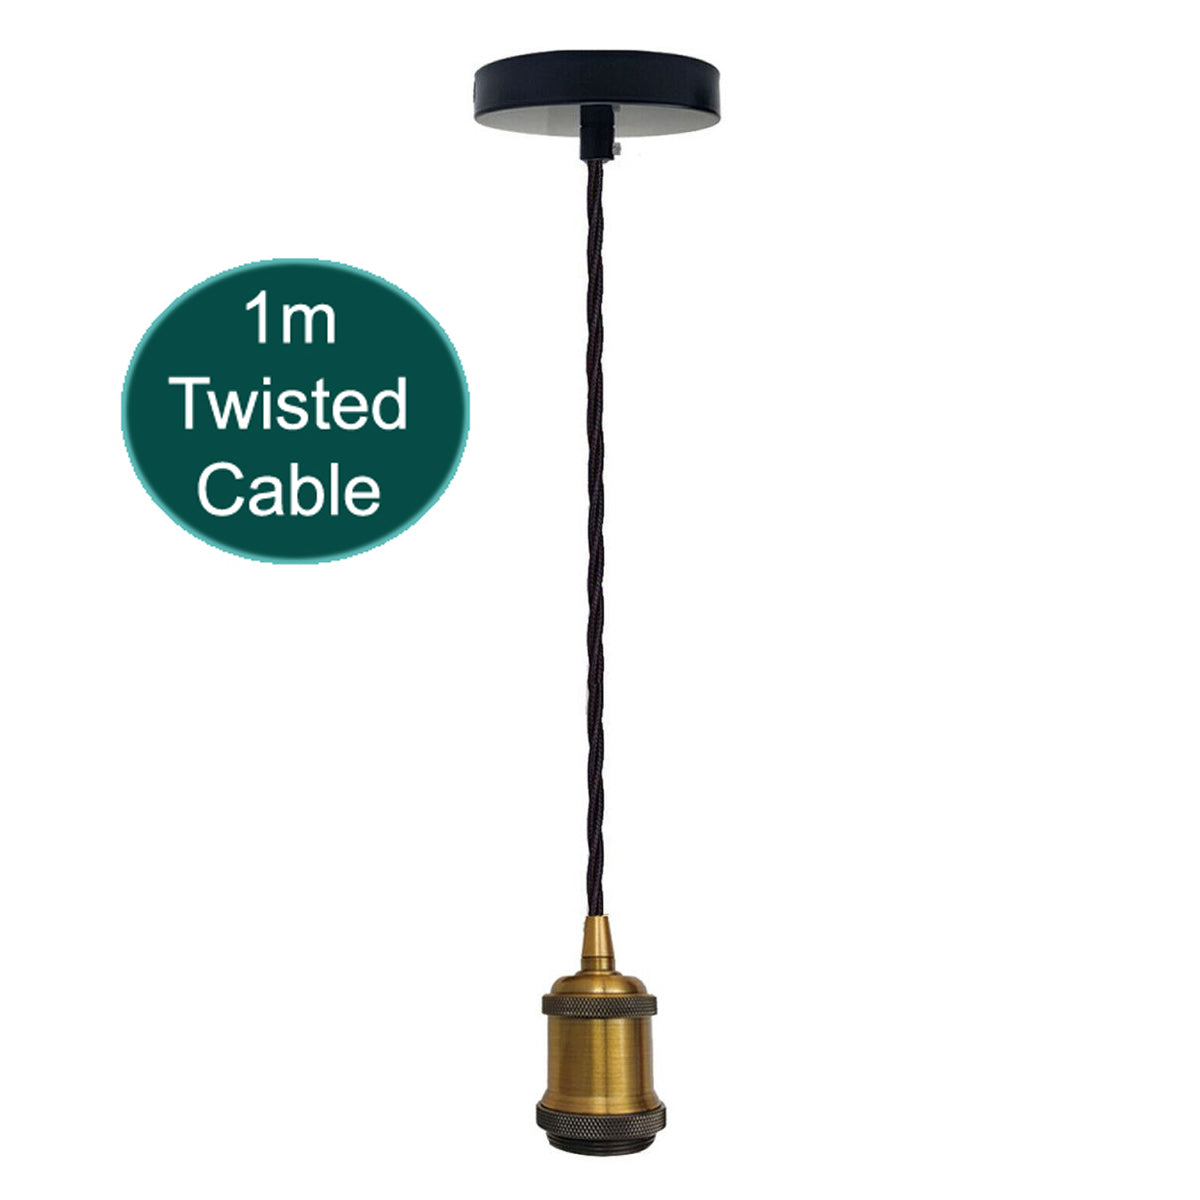 1m Twisted Cable E27 Base Yellow Brass Holder~1714 - LEDSone UK Ltd